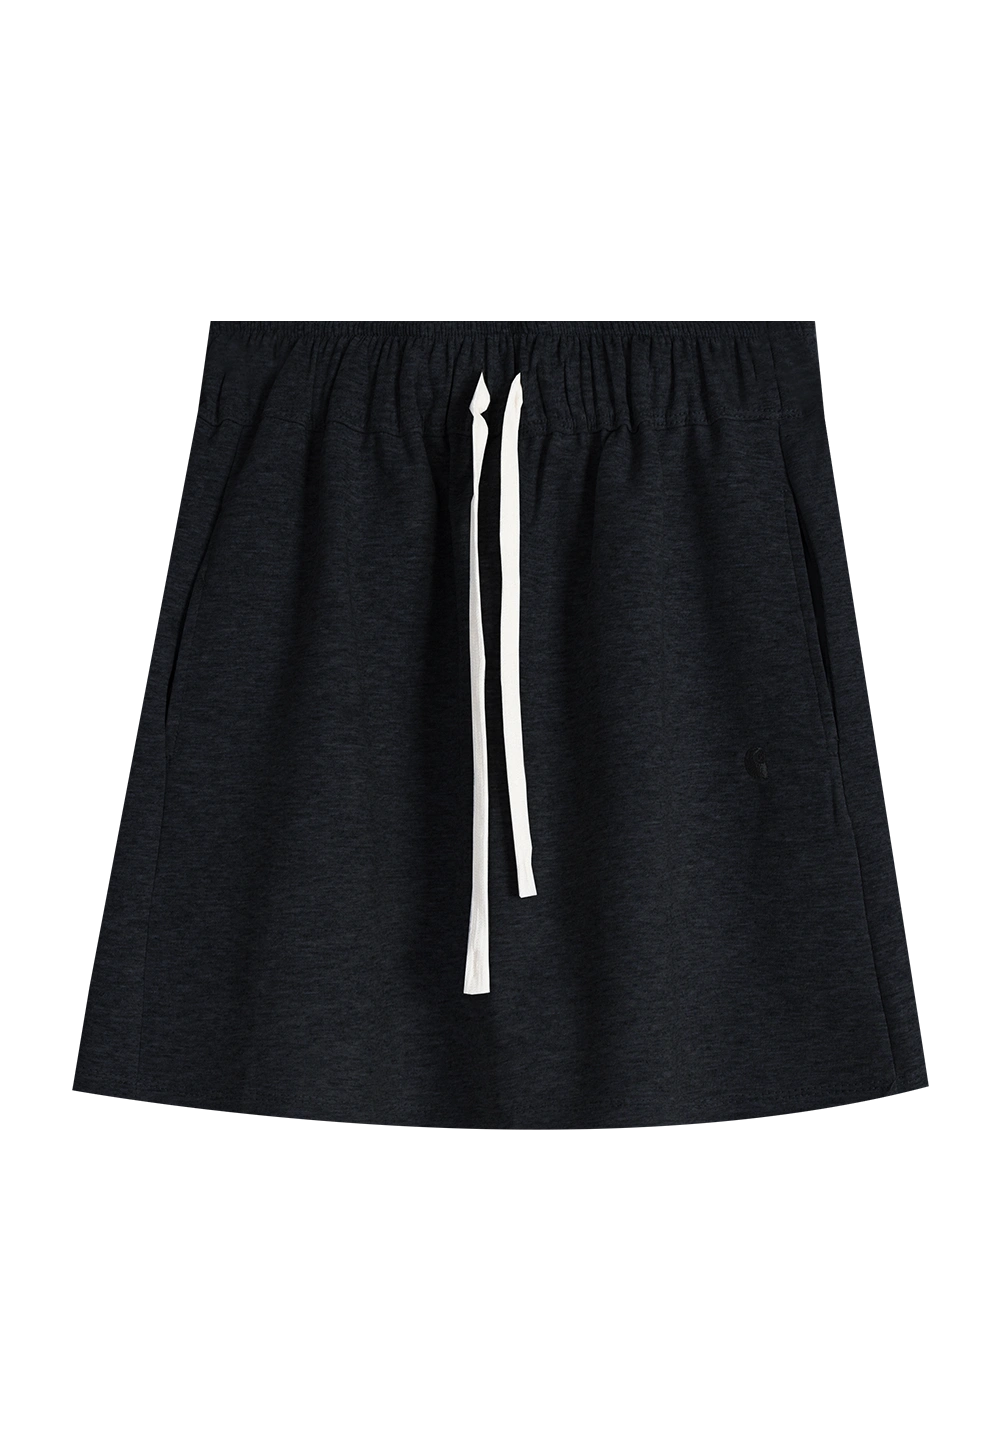 Women's Drawstring Elastic Waist Skirt